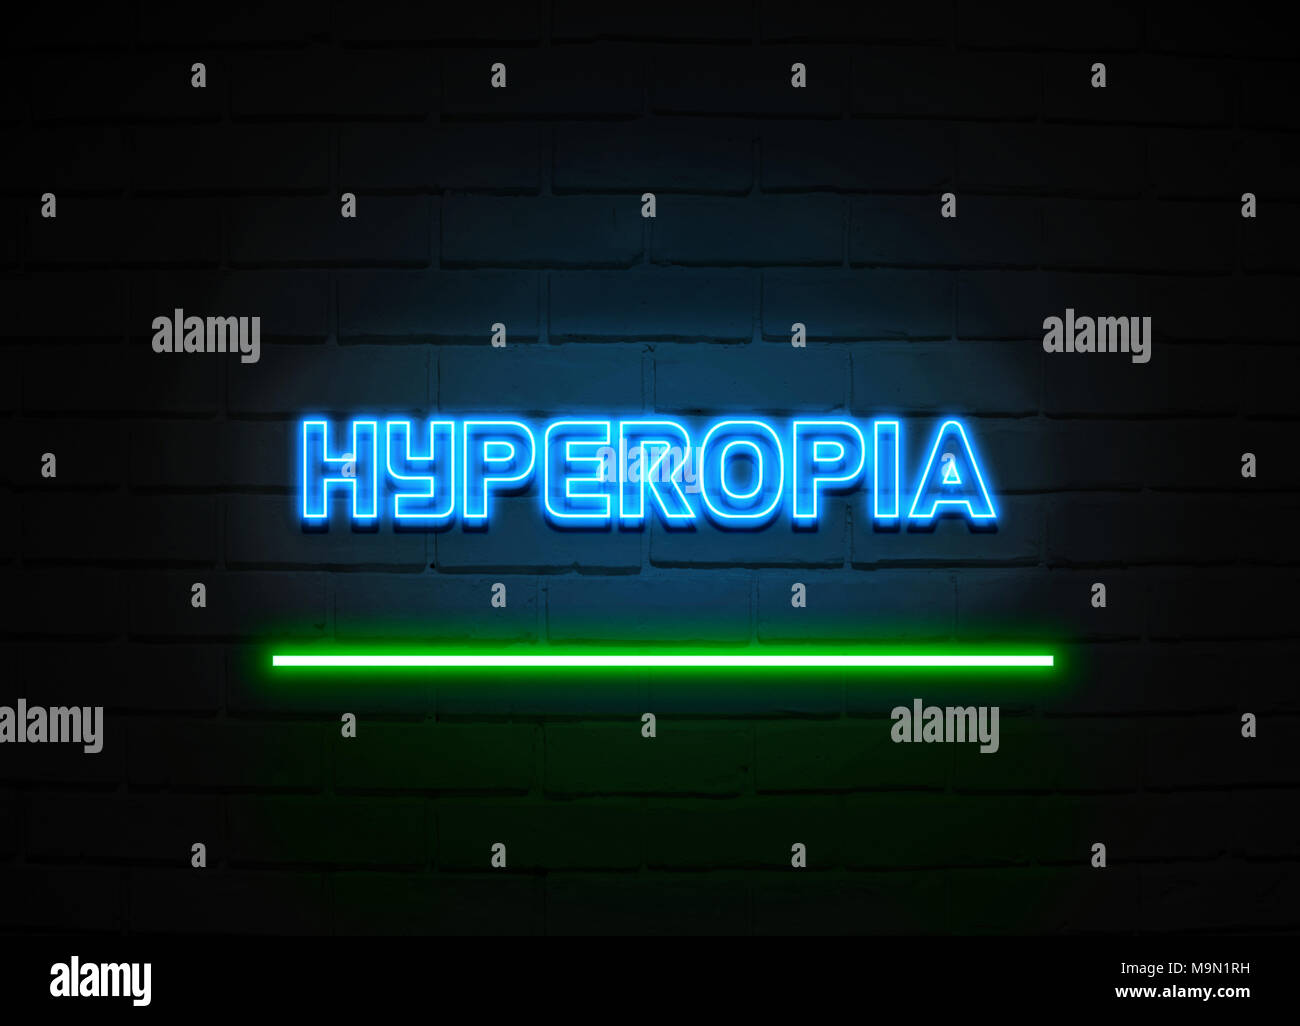 Hyperopie Leuchtreklame - glühende Leuchtreklame auf brickwall Wand - 3D-Royalty Free Stock Illustration dargestellt. Stockfoto